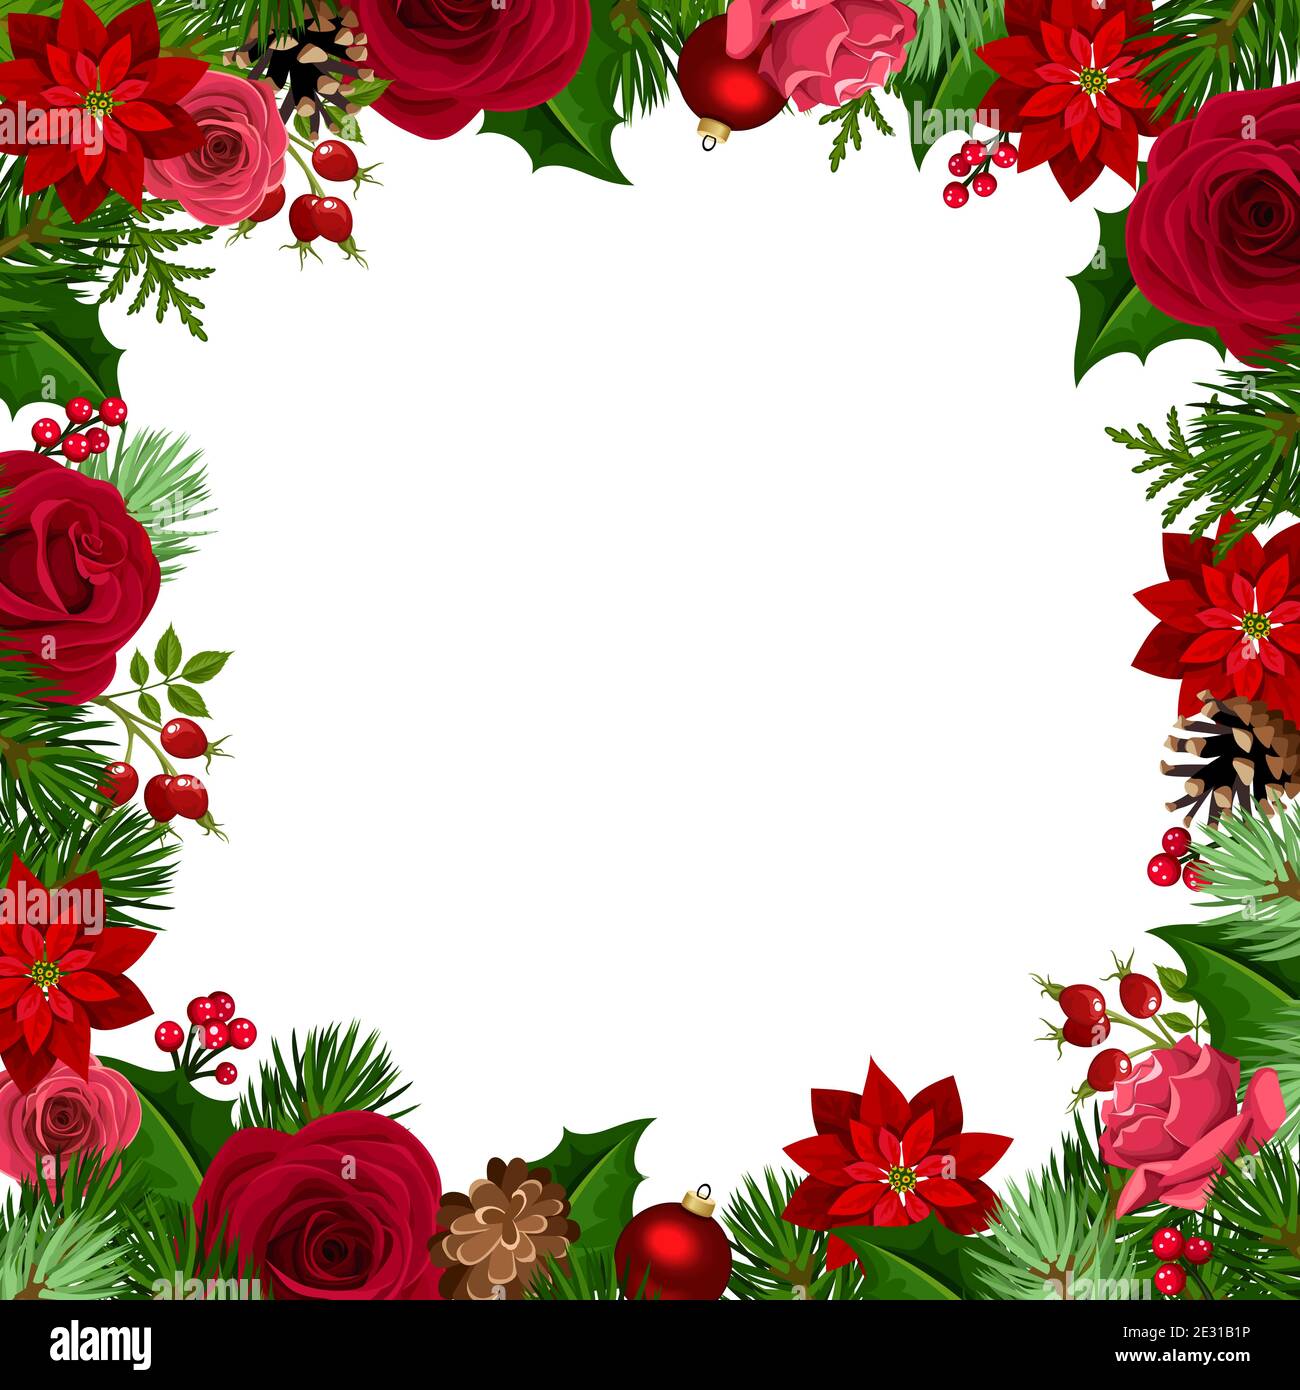 Cadre de Noël vectoriel avec roses rouges et vertes, fleurs de poinsettia, balles, houx, cônes et branches de sapin. Illustration de Vecteur